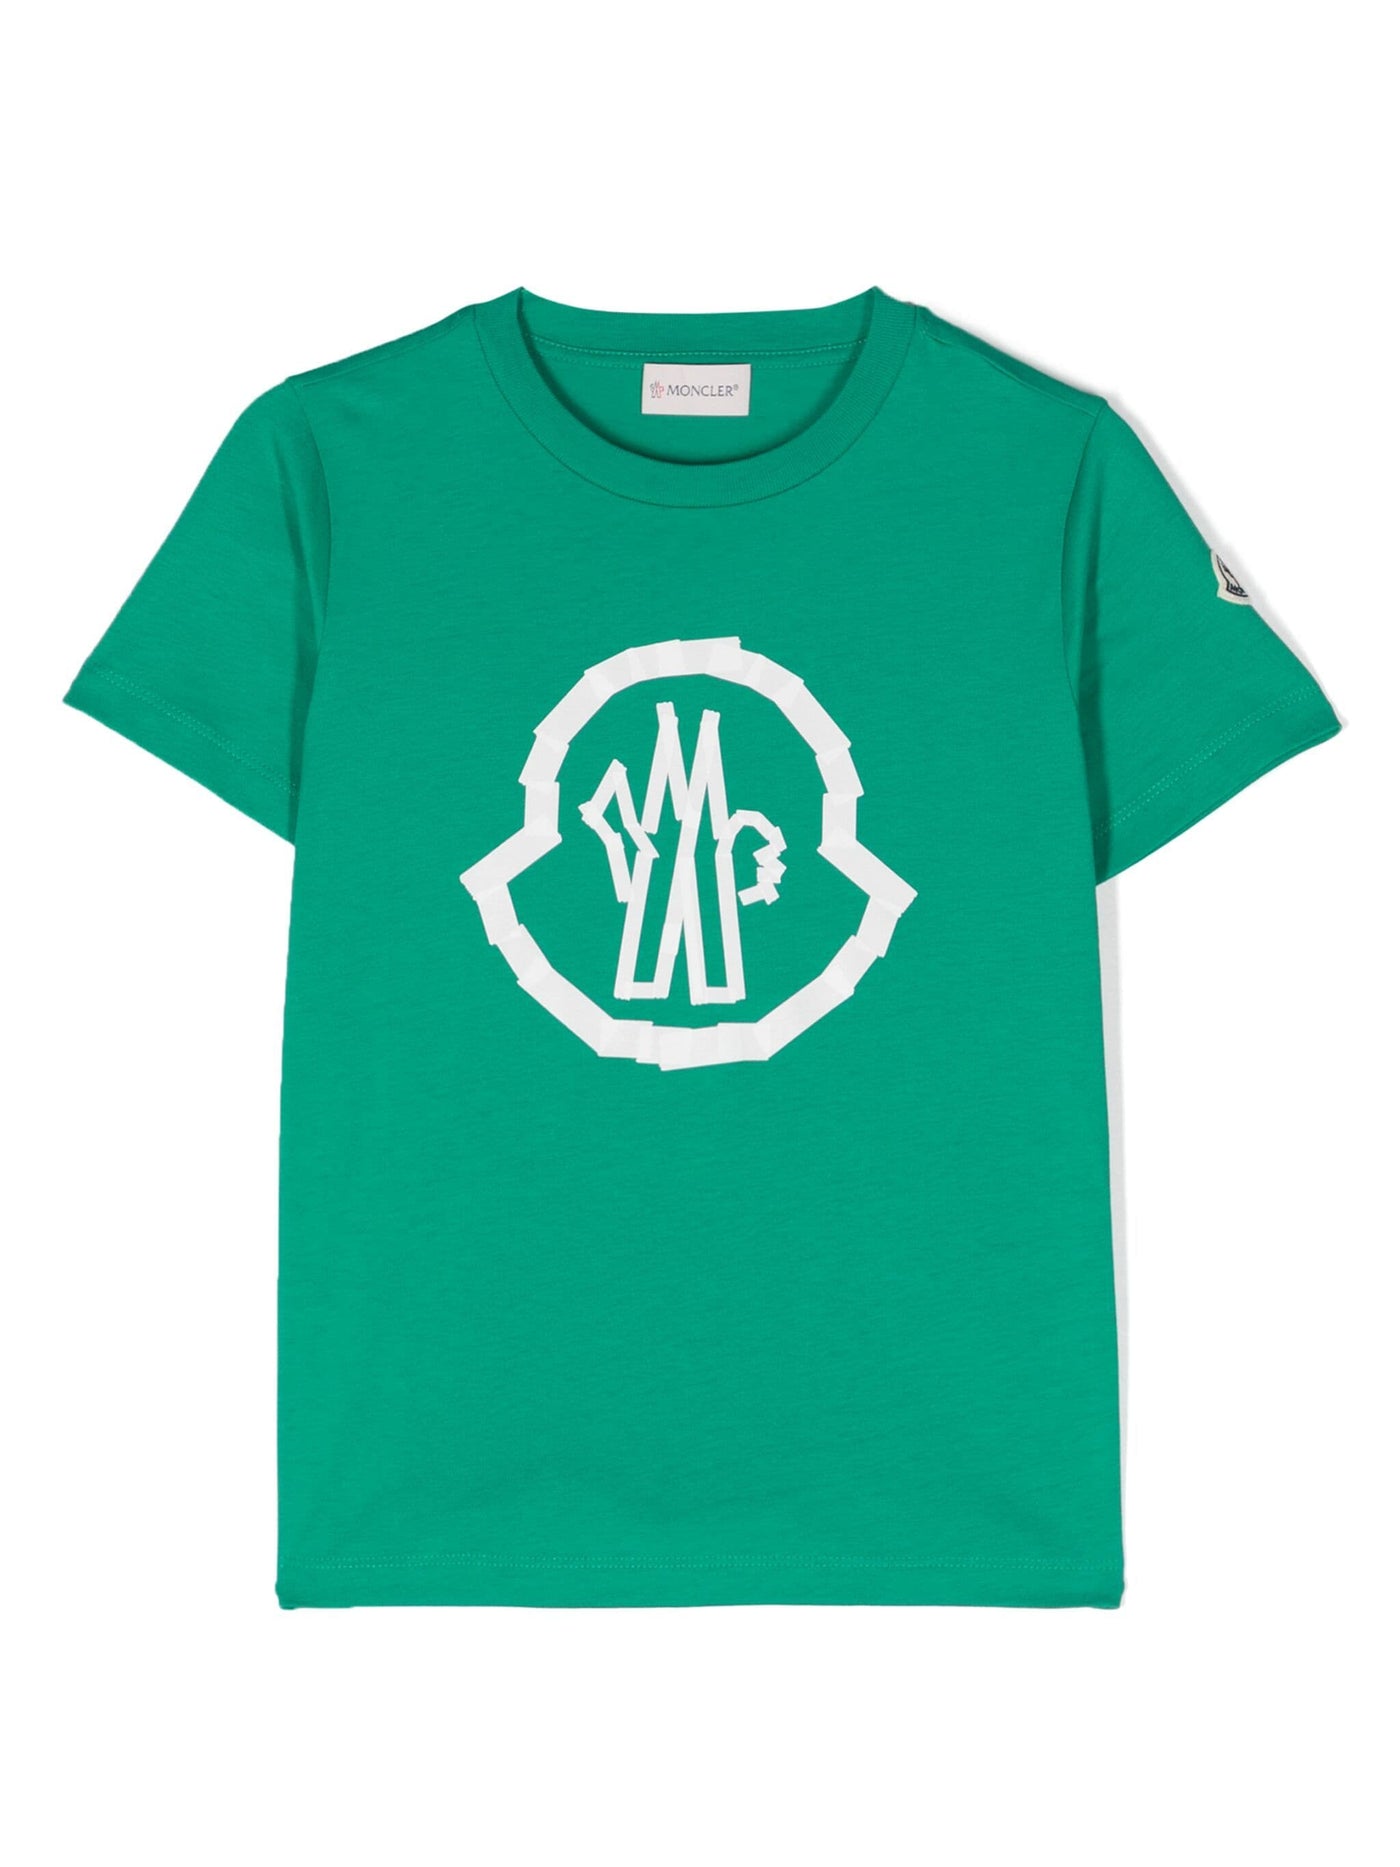 Green cotton jersey boy MONCLER t-shirt